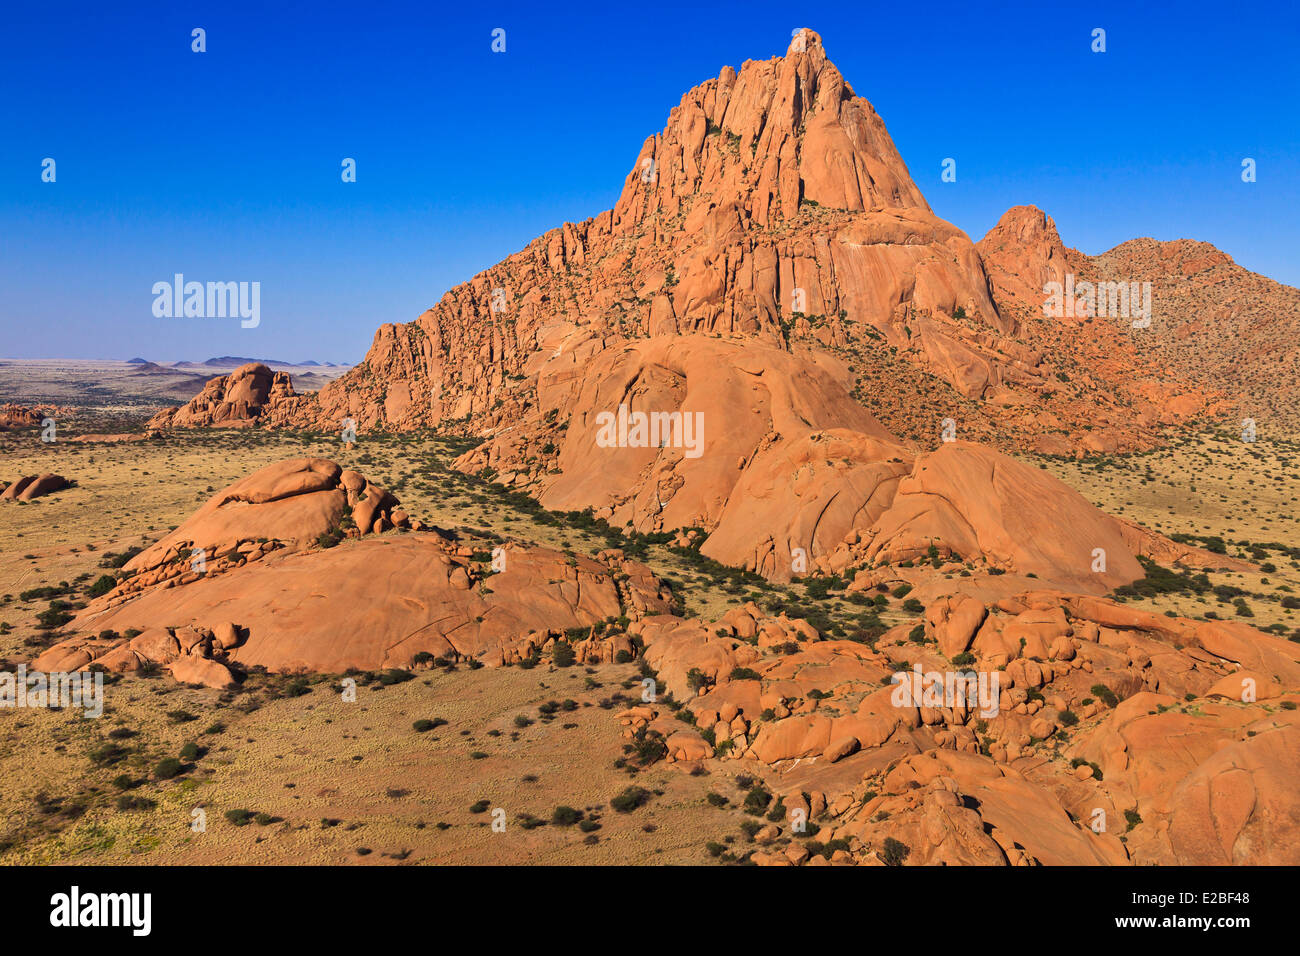 La Namibie, région d'Erongo, Damaraland, le Spitzkoppe ou Spitzkop (1784 m), la montagne de granit dans le désert du Namib (vue aérienne) Banque D'Images